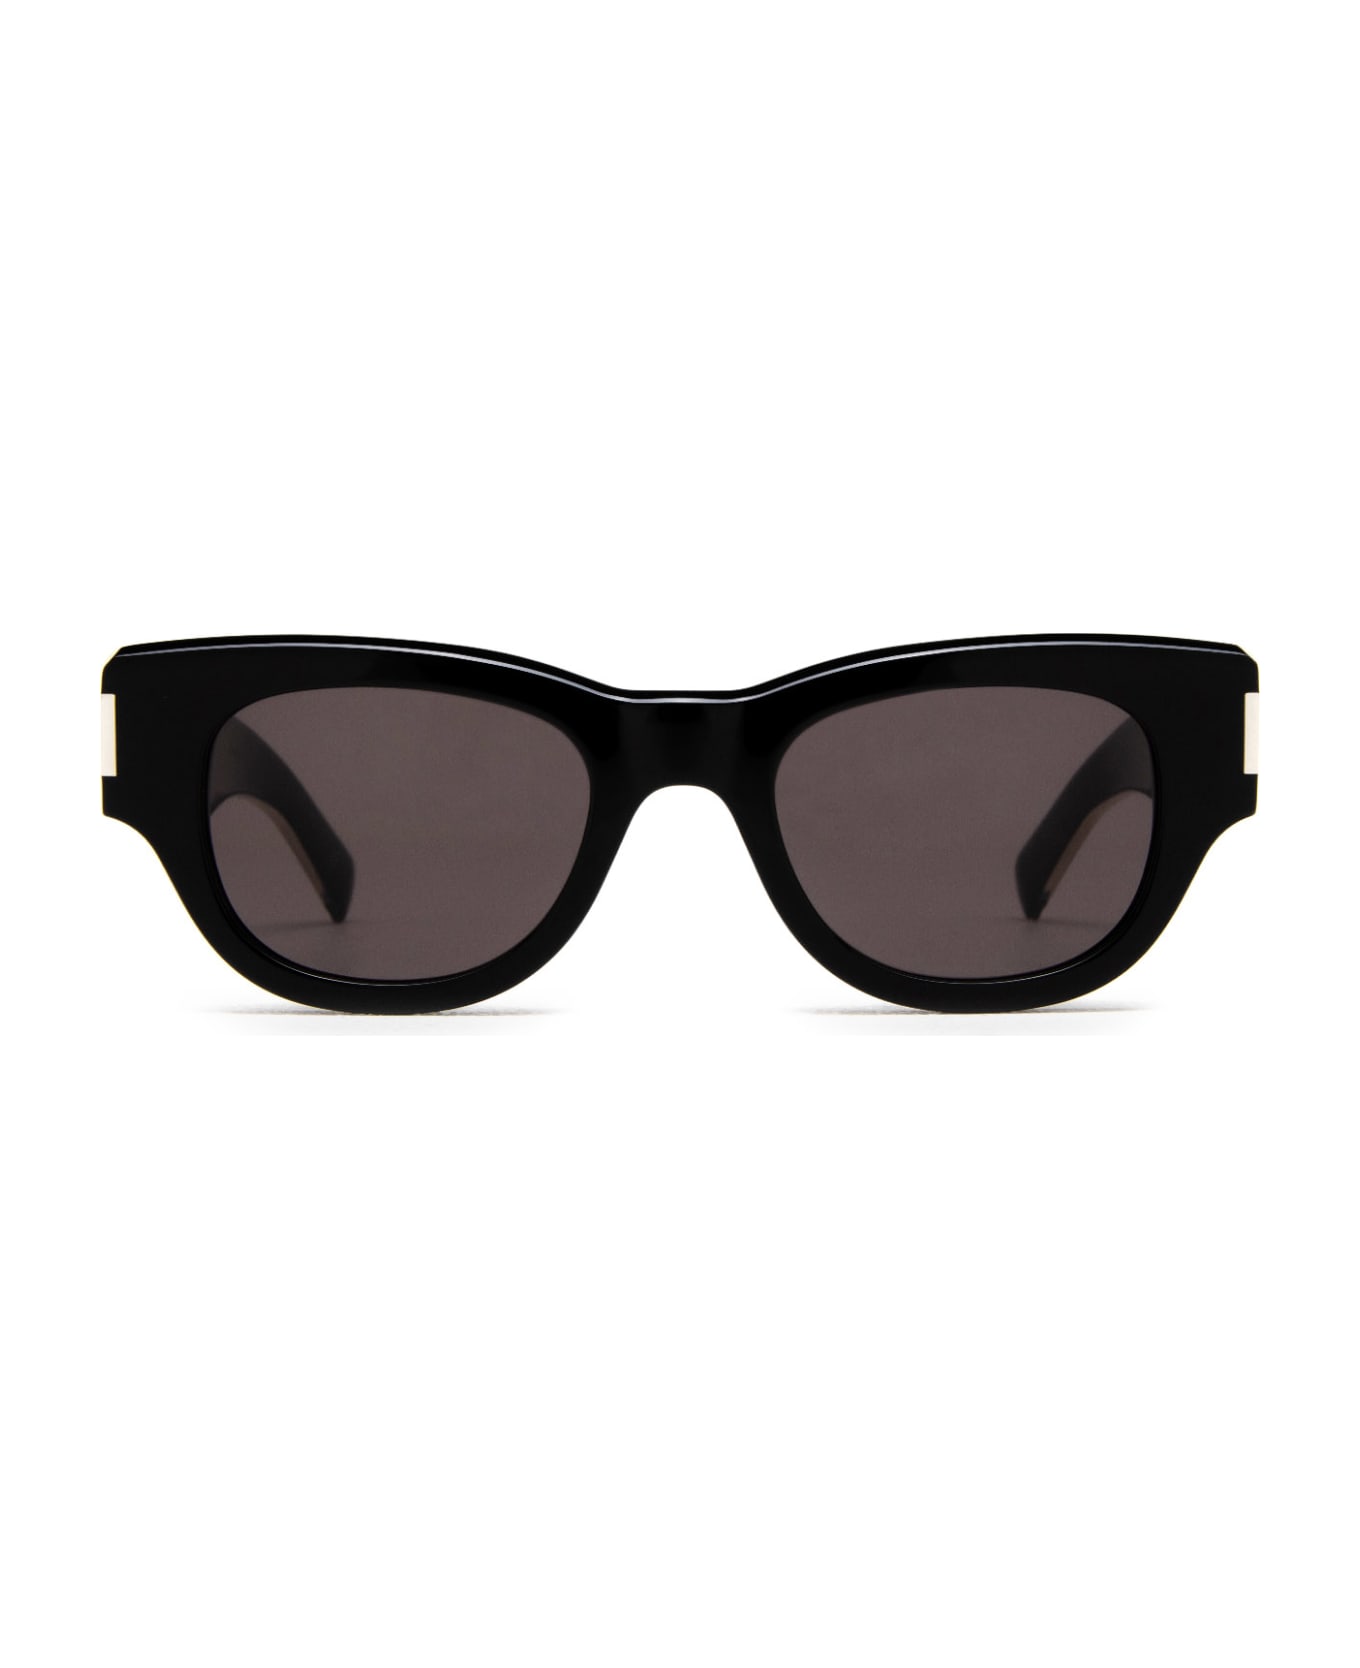 Saint Laurent Eyewear Sl 573 Black Sunglasses - Black サングラス